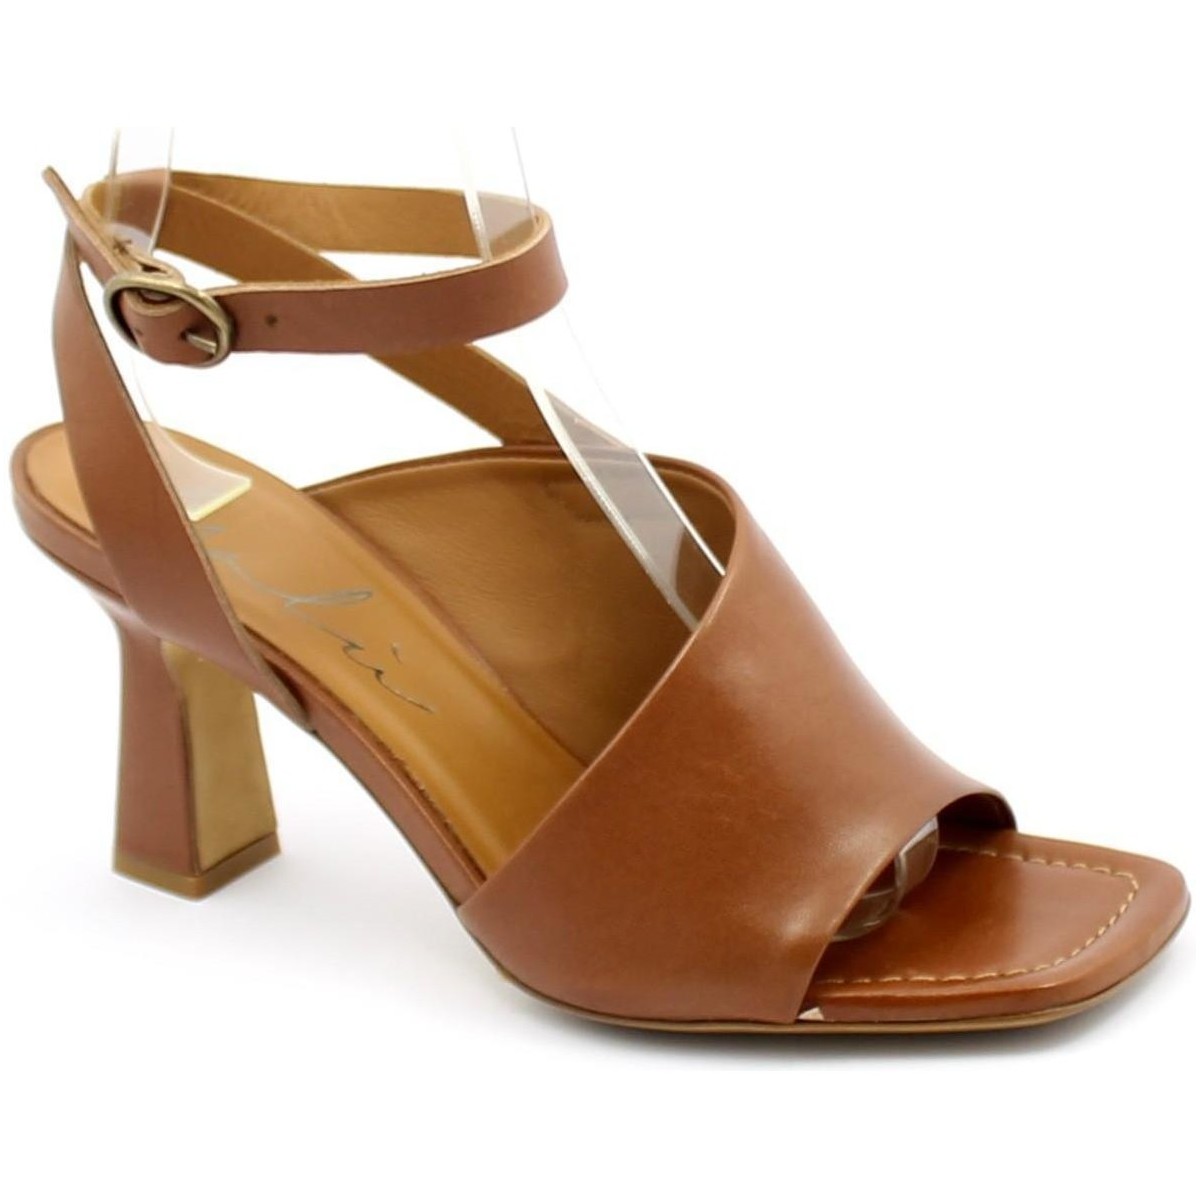 Chaussures Femme Sandales et Nu-pieds Malù Malù MAL-E21-7408-CU Marron